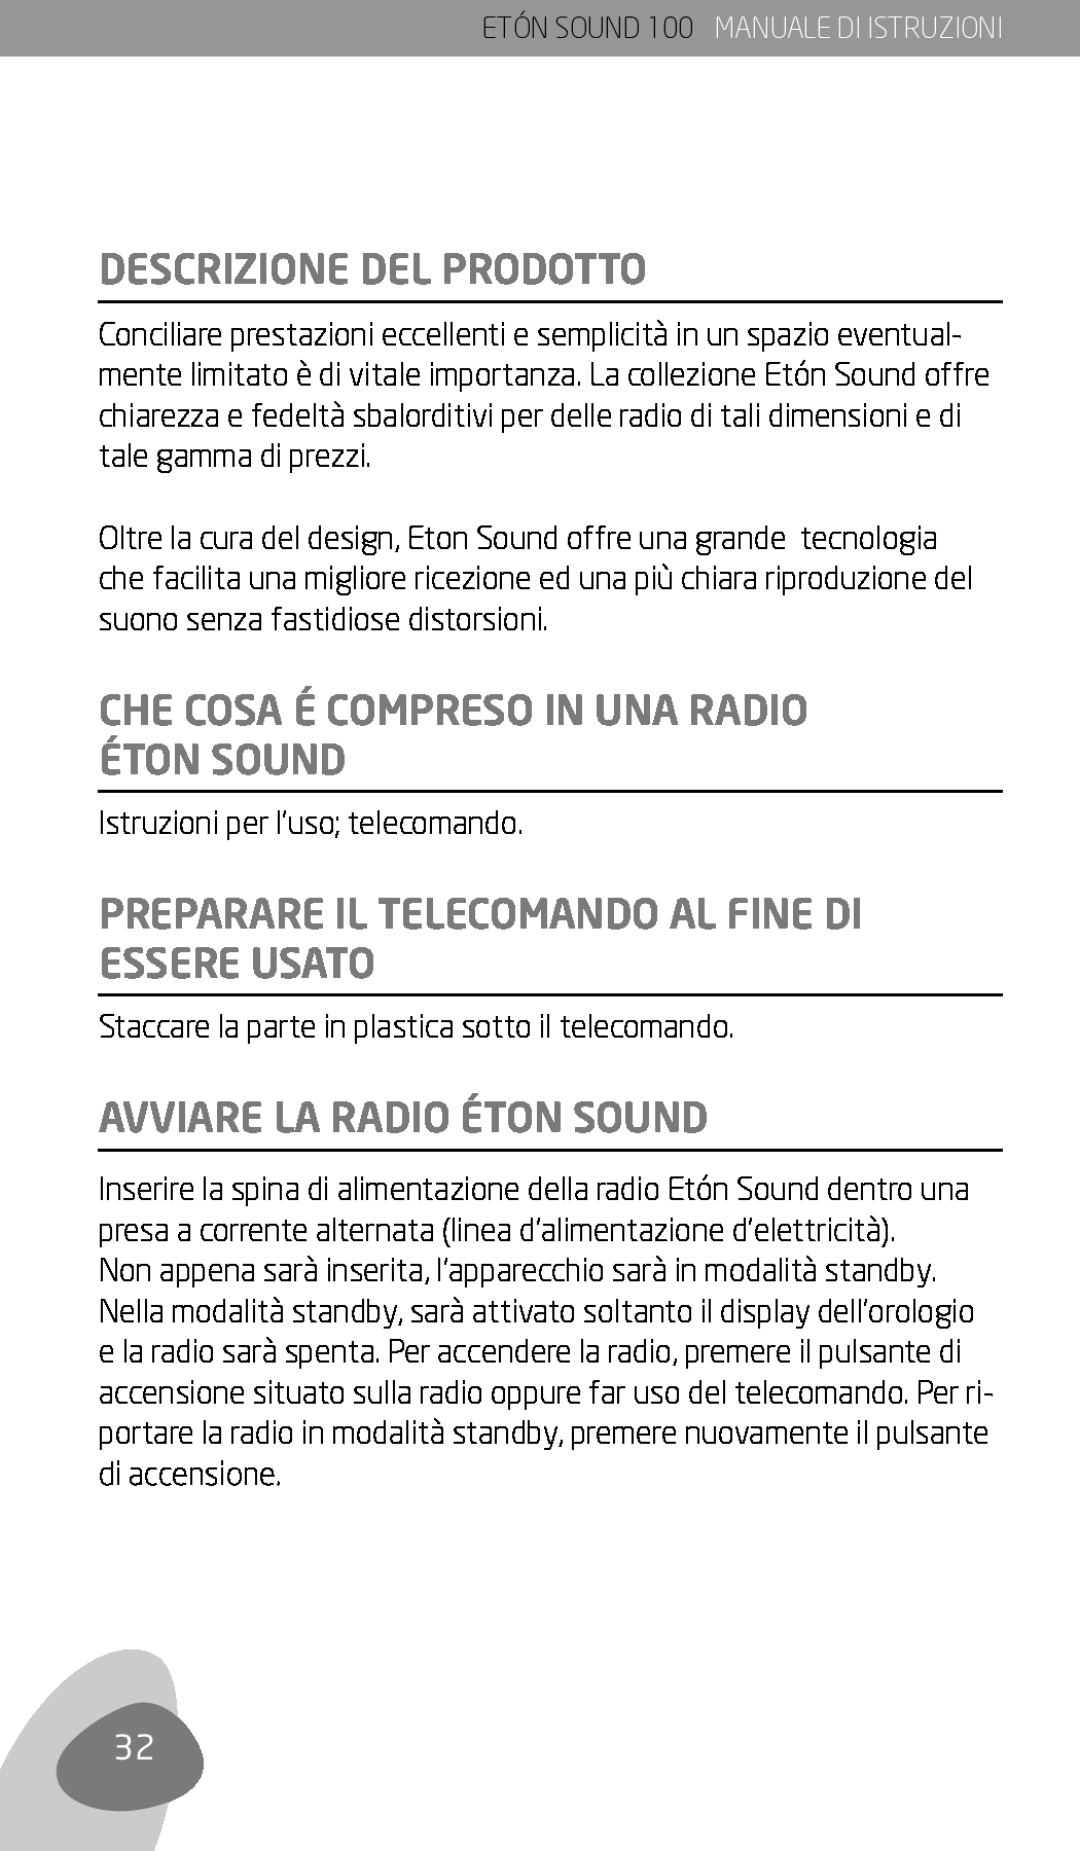 Eton Sound 100 Descrizione Del Prodotto, Che Cosa É Compreso In Una Radio Éton Sound, Avviare La Radio Éton Sound 